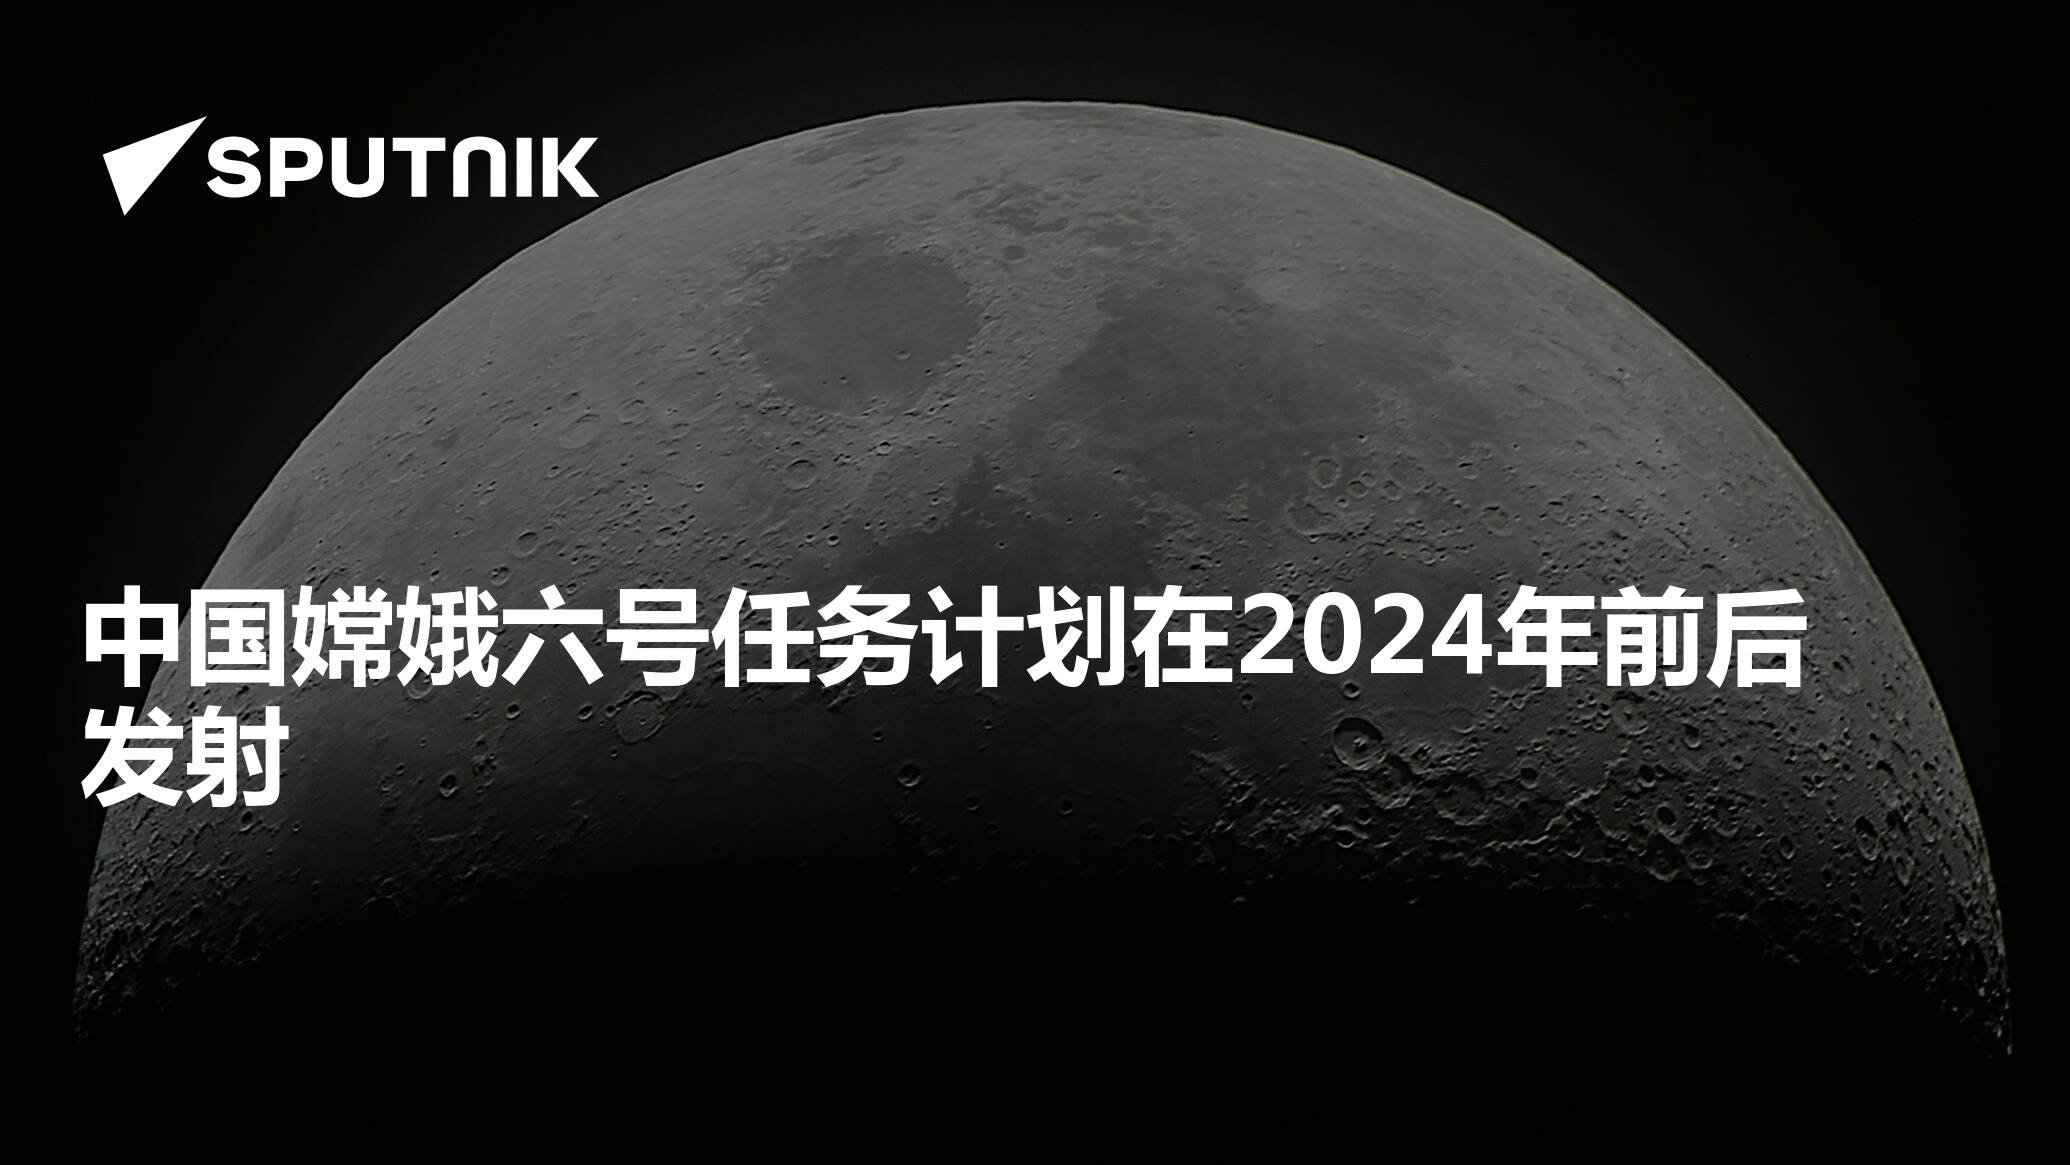 🇨🇳盘点近一年来中国航天事业的井喷式成就🇨🇳 -6park.com